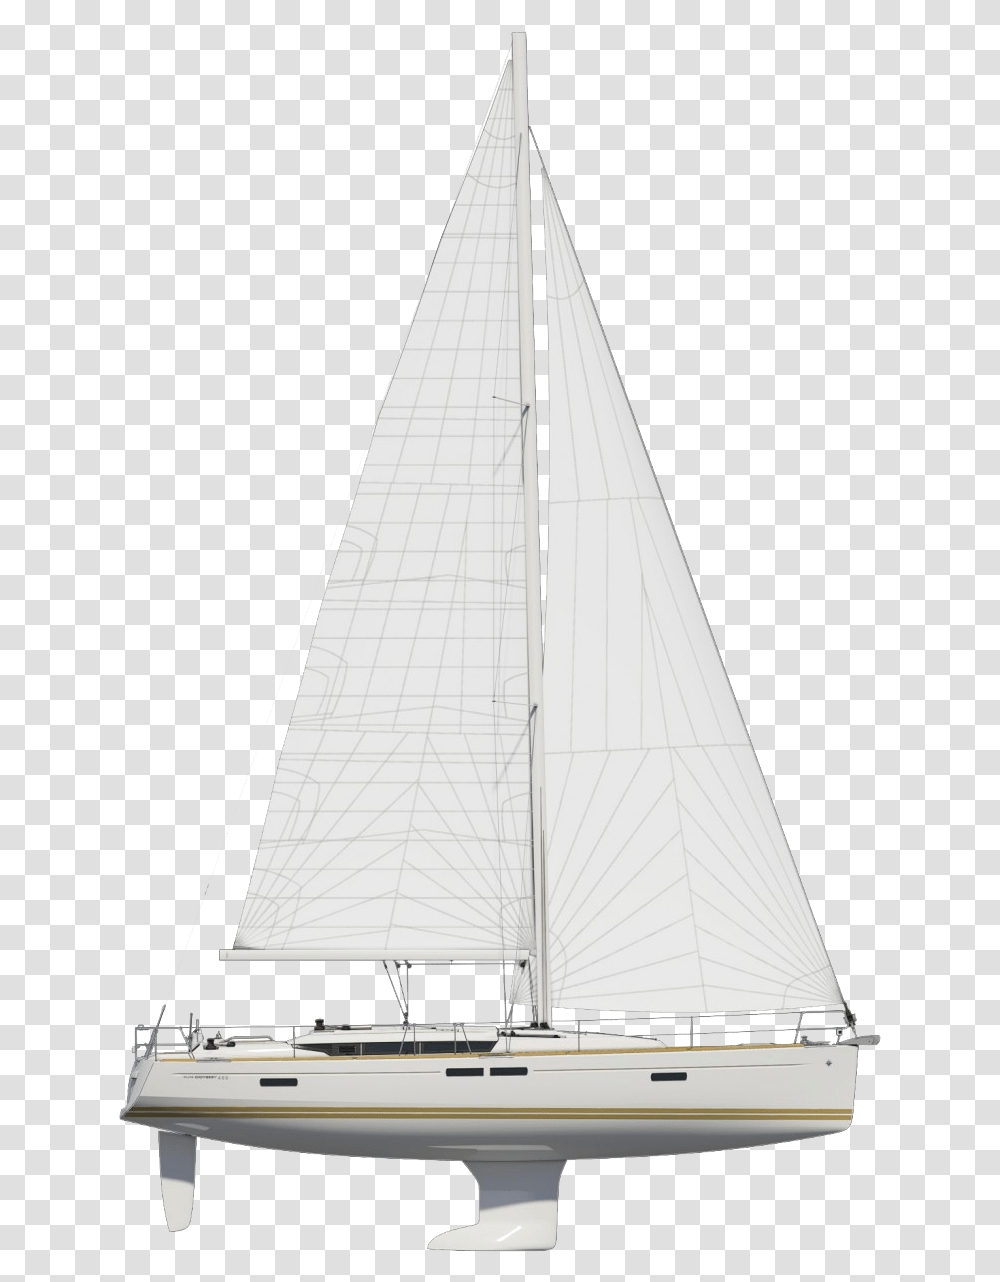 Yacht Sailing Image Sail, Boat, Vehicle, Transportation, Sailboat Transparent Png